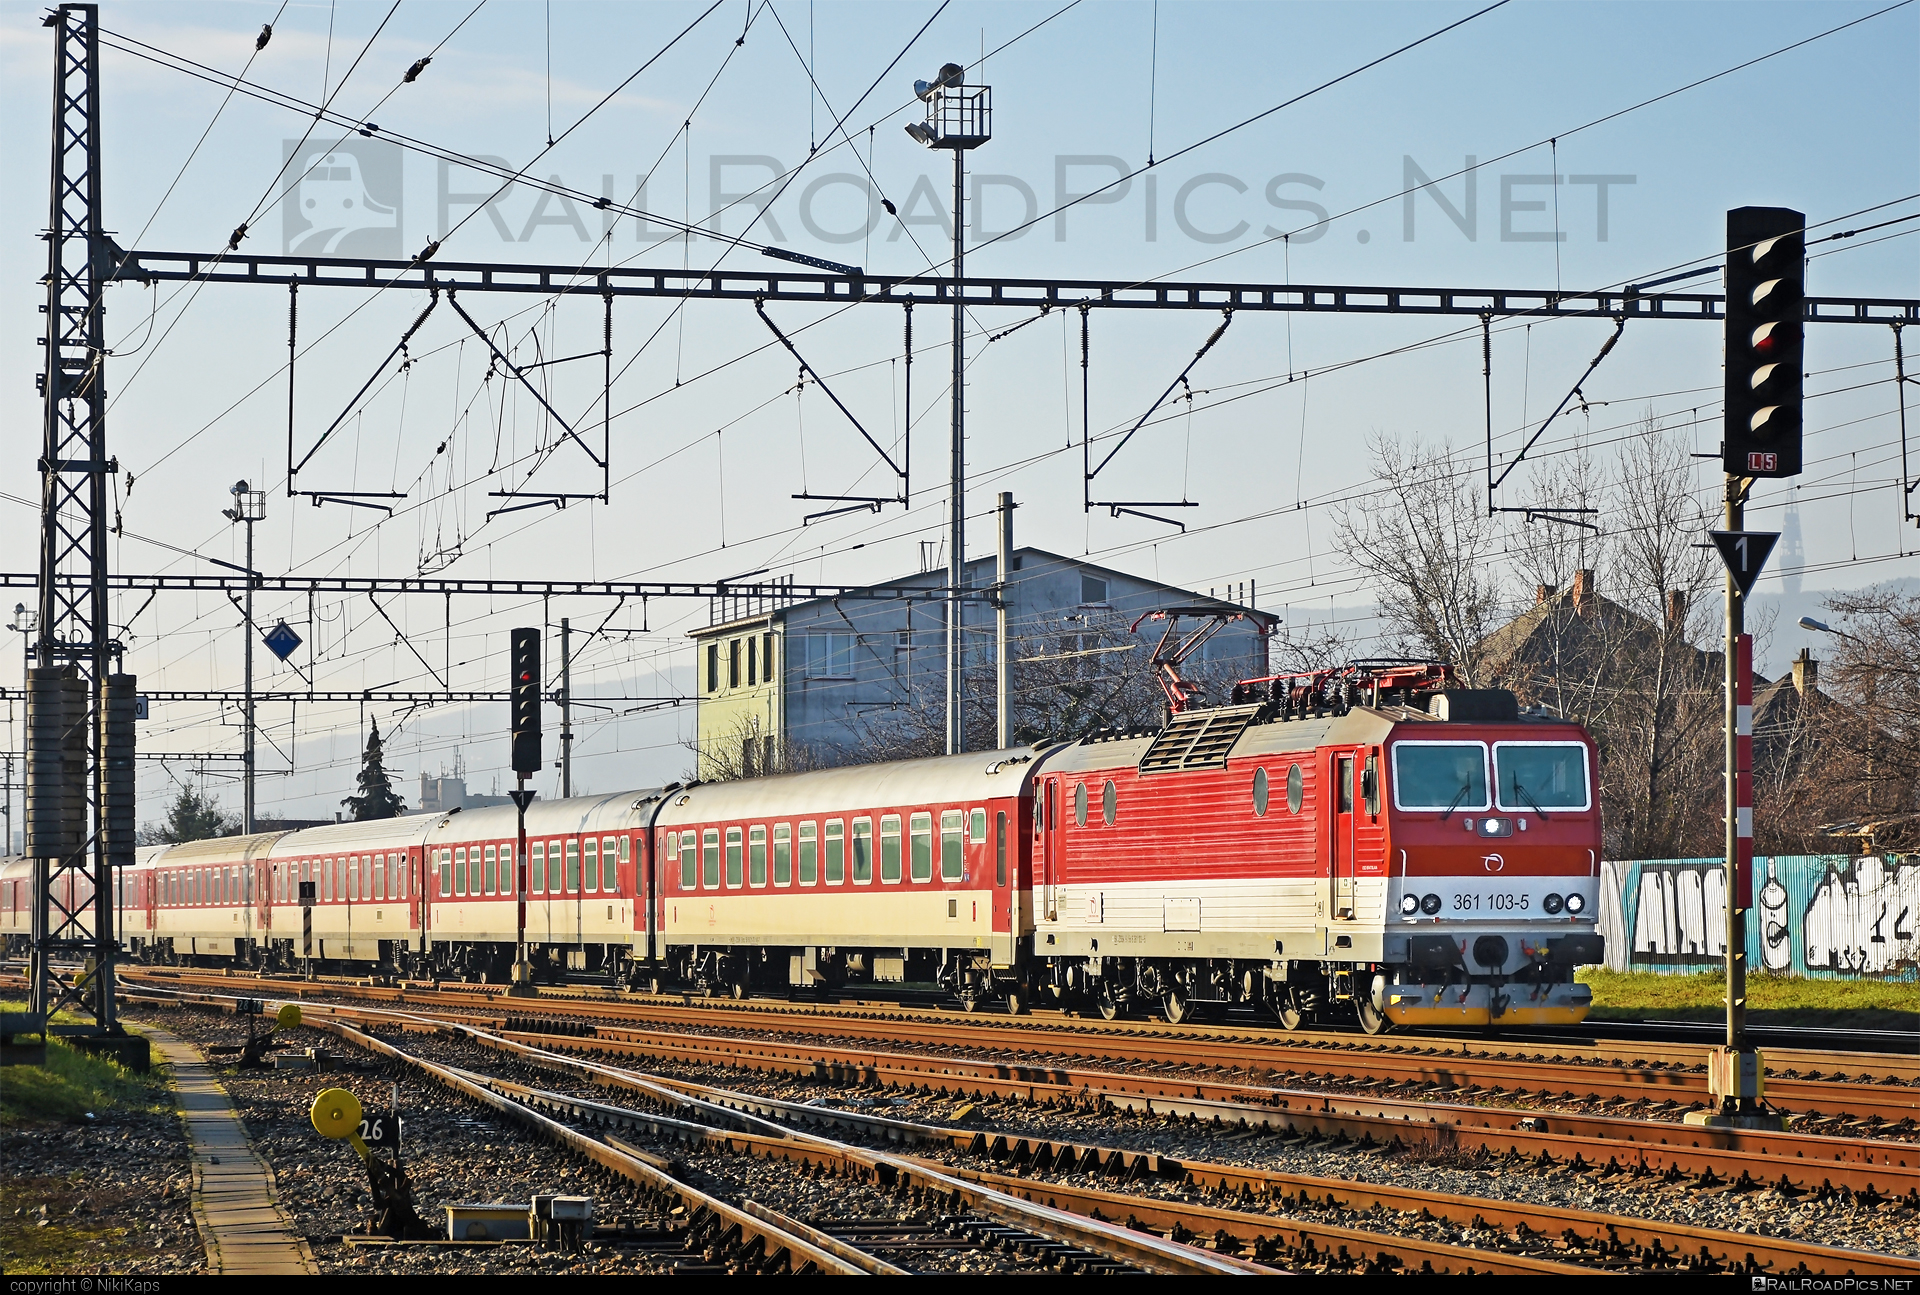 ŽOS Vrútky Class 361.1 - 361 103-5 operated by Železničná Spoločnost' Slovensko, a.s. #ZeleznicnaSpolocnostSlovensko #locomotive361 #locomotive3611 #zosvrutky #zssk